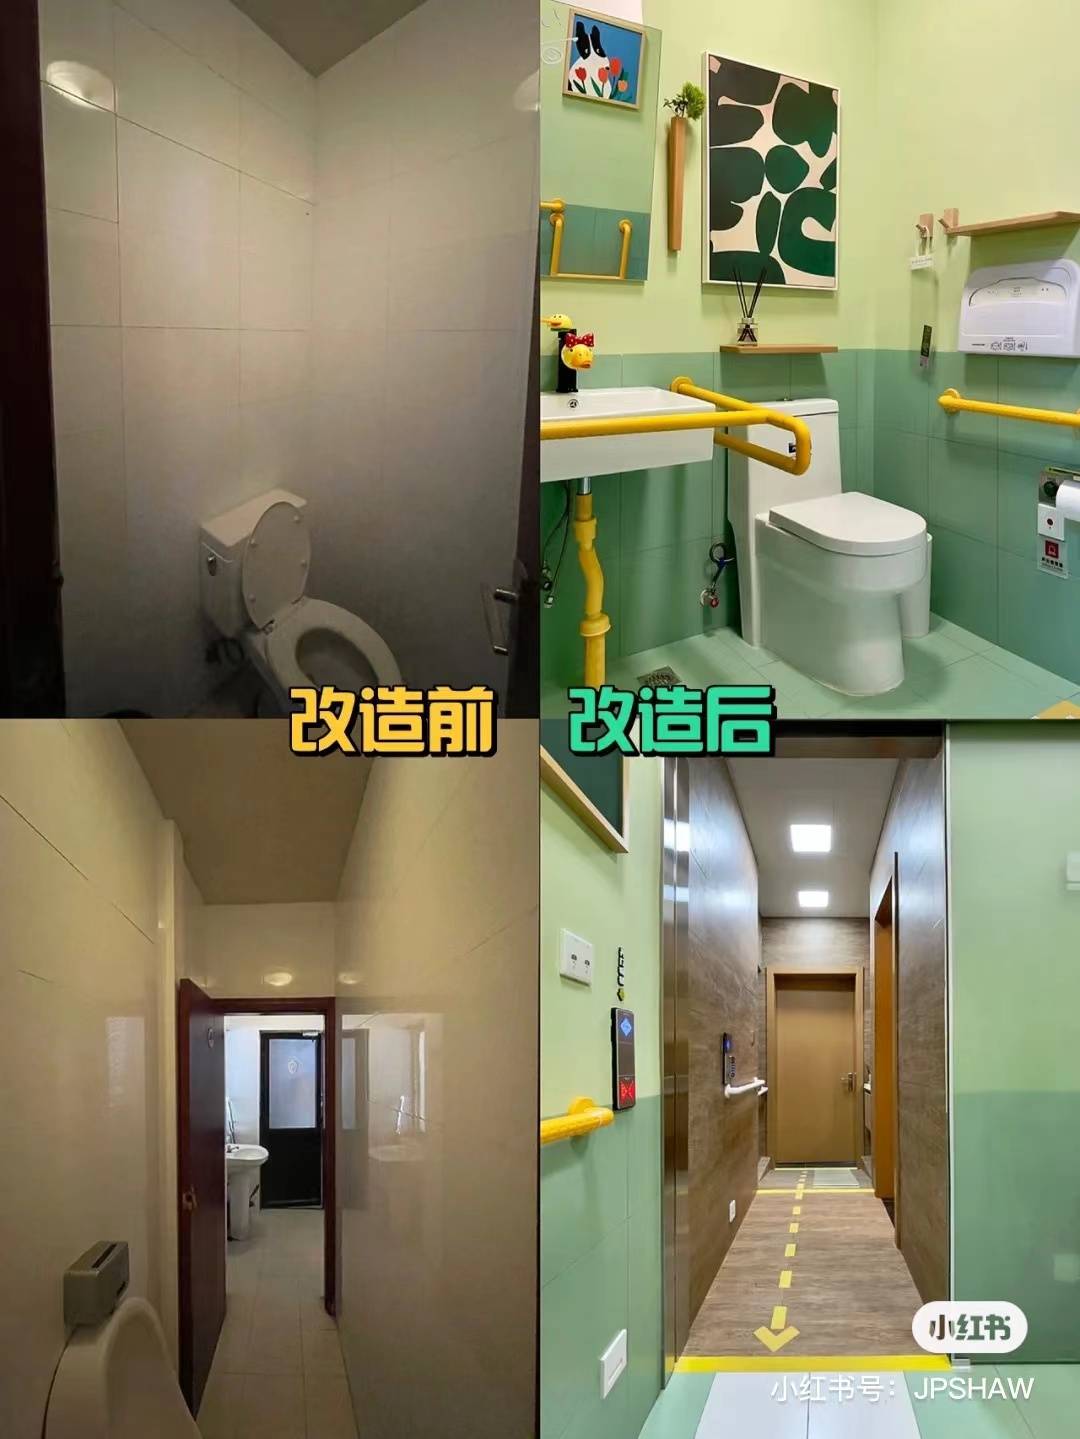 WechatIMG205 - Il bagno pubblico che Xiaohongshu ha trasformato per loro merita di essere “copiato”